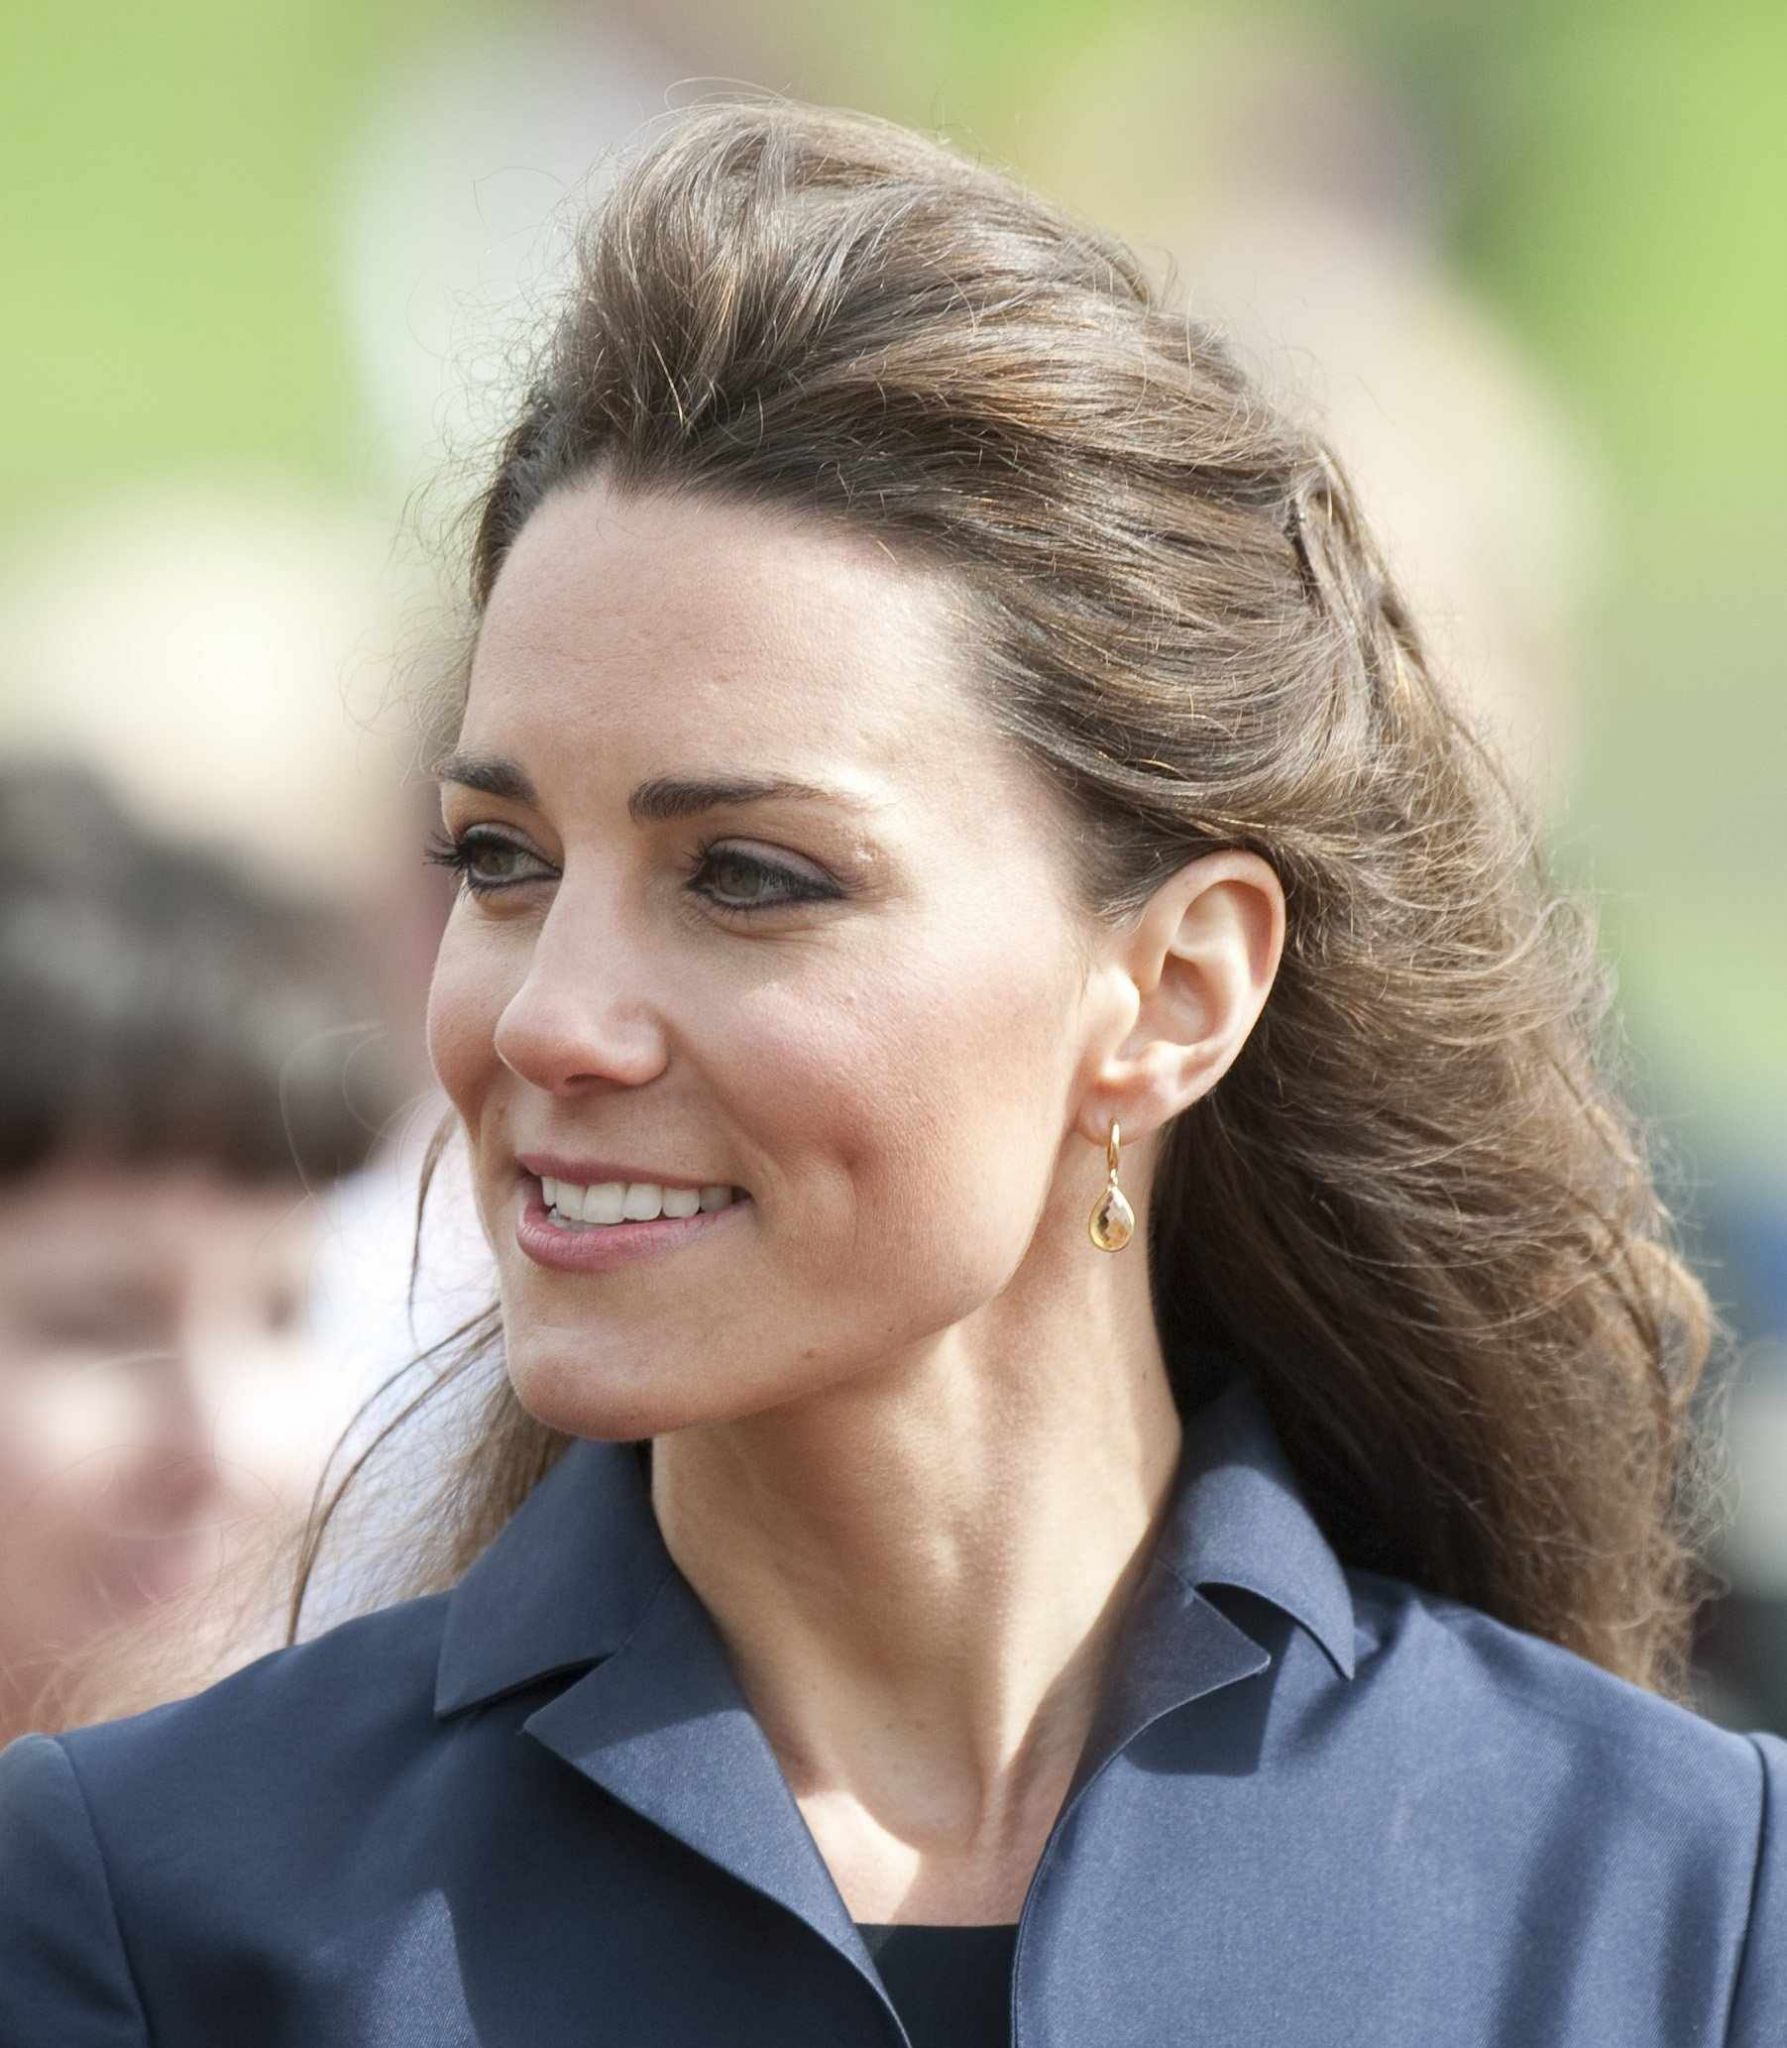 April 11 | Prince William & Kate Middleton Visit Darwen, England ...